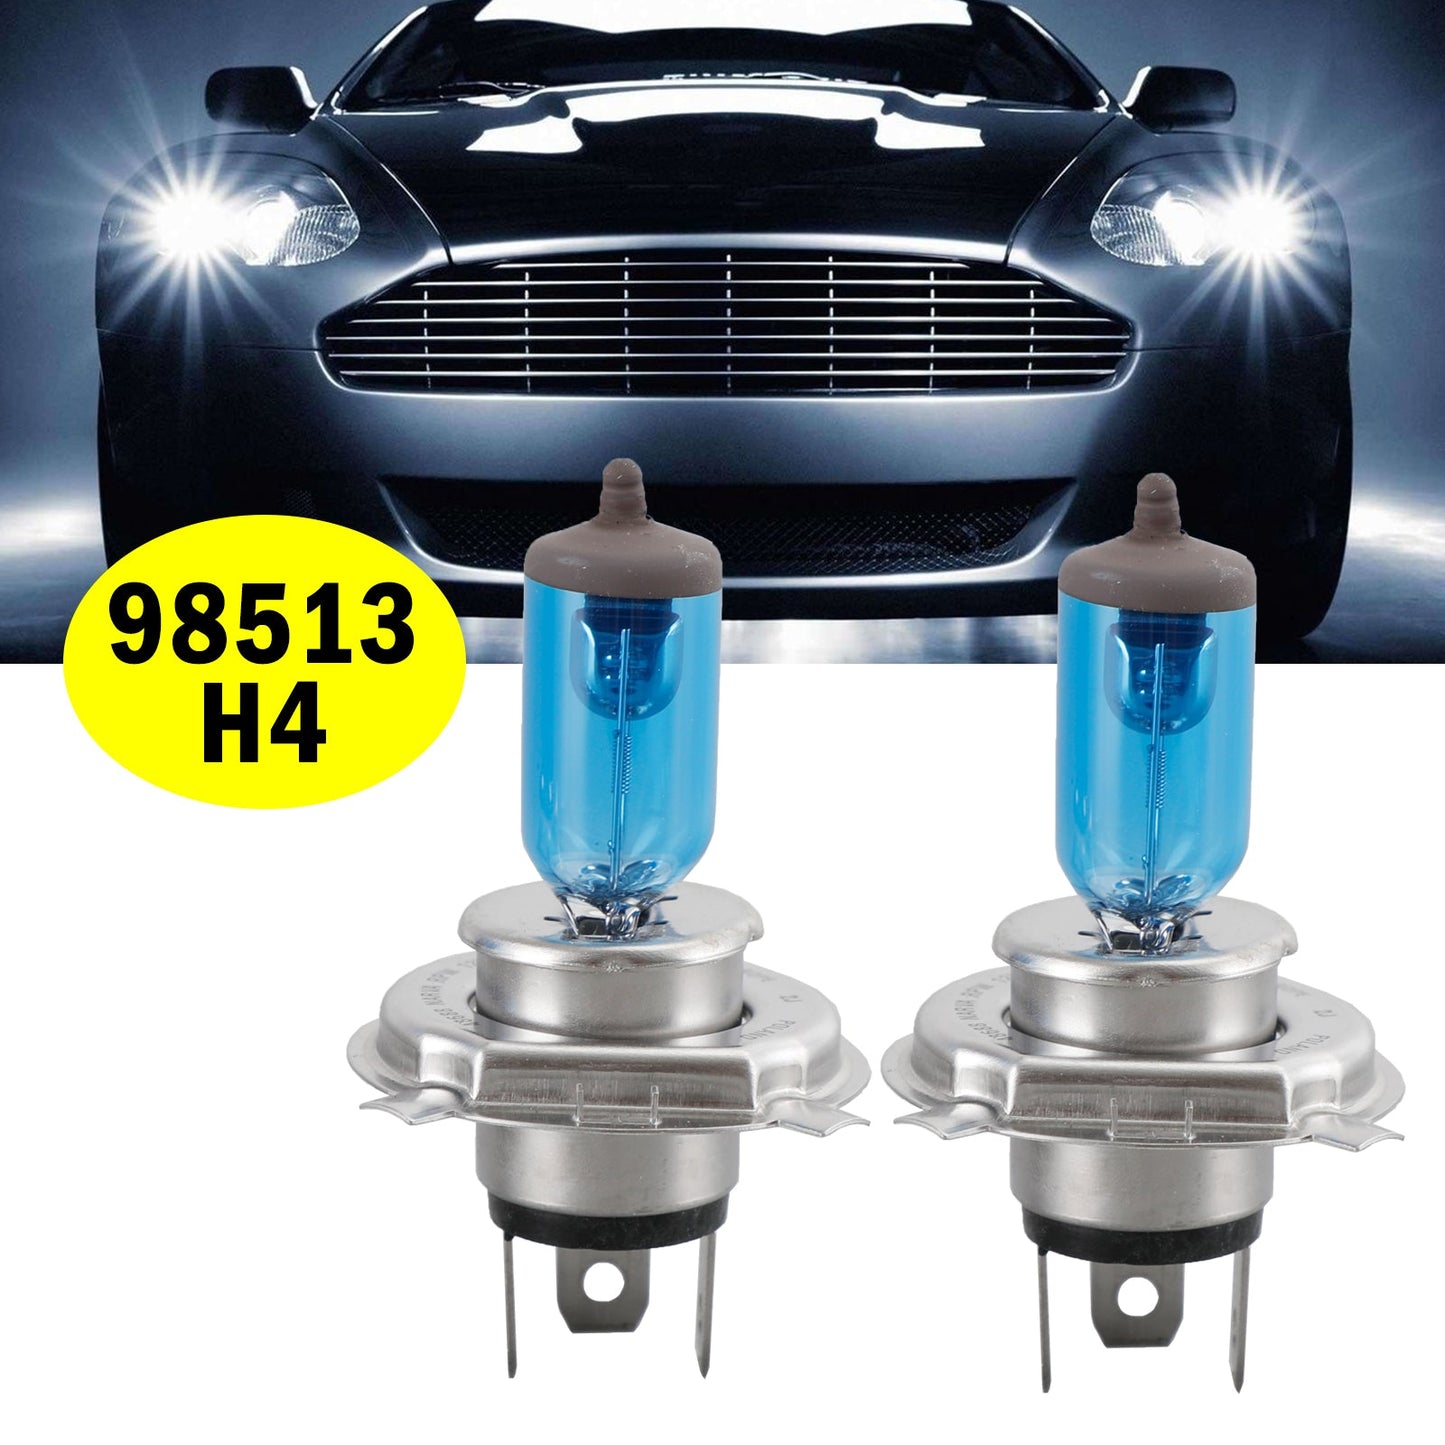 H4 RPW 98513 For NARVA Range Power White Car Headlight Lamp 12V100/90W P43t